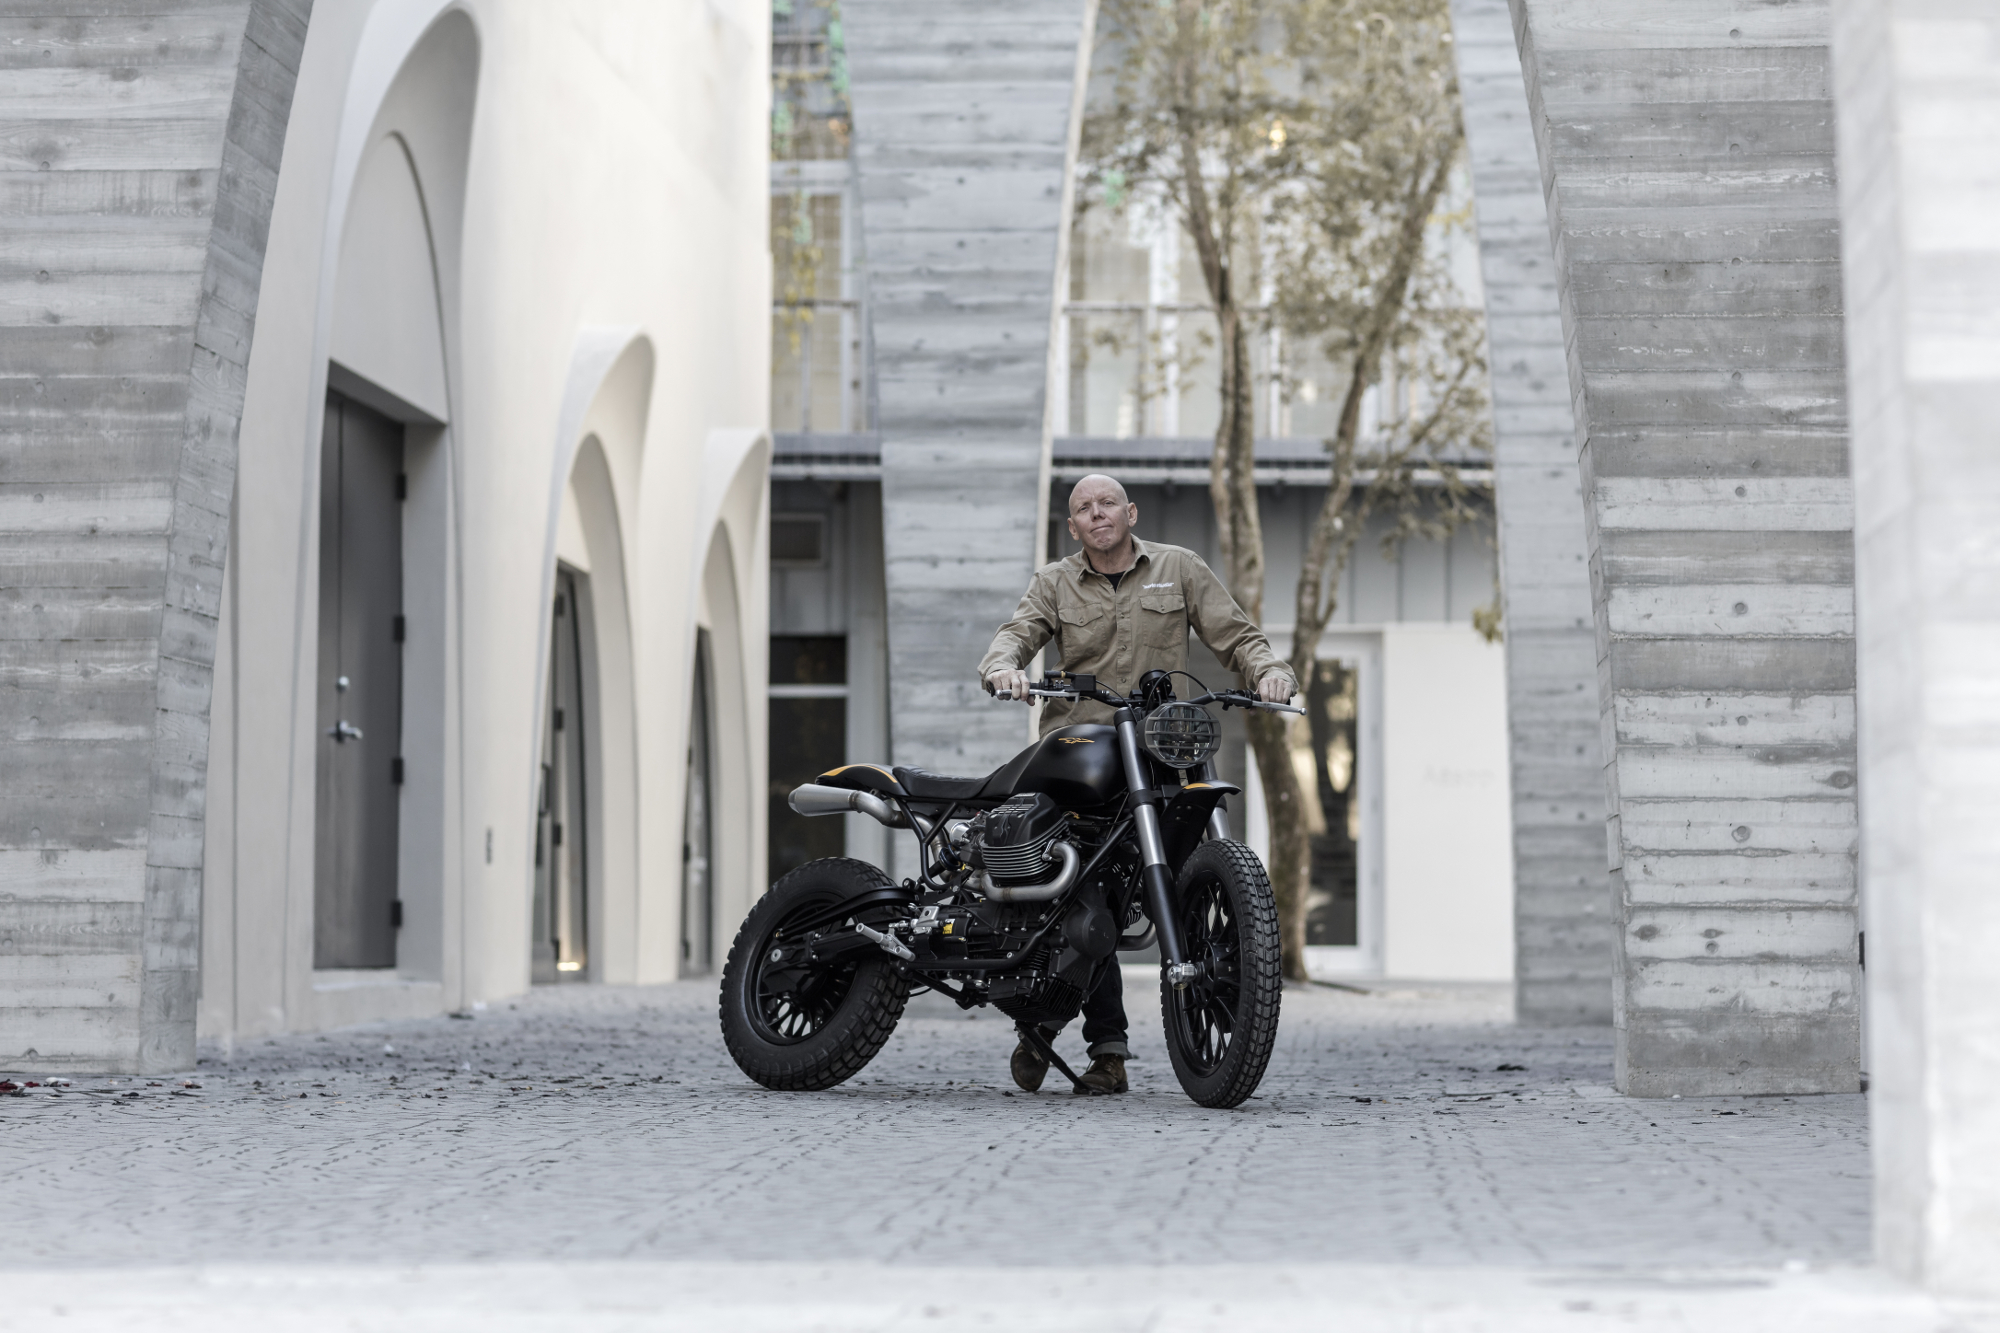 Moto Guzzi V9 Scrambler with Bruce McQuiston